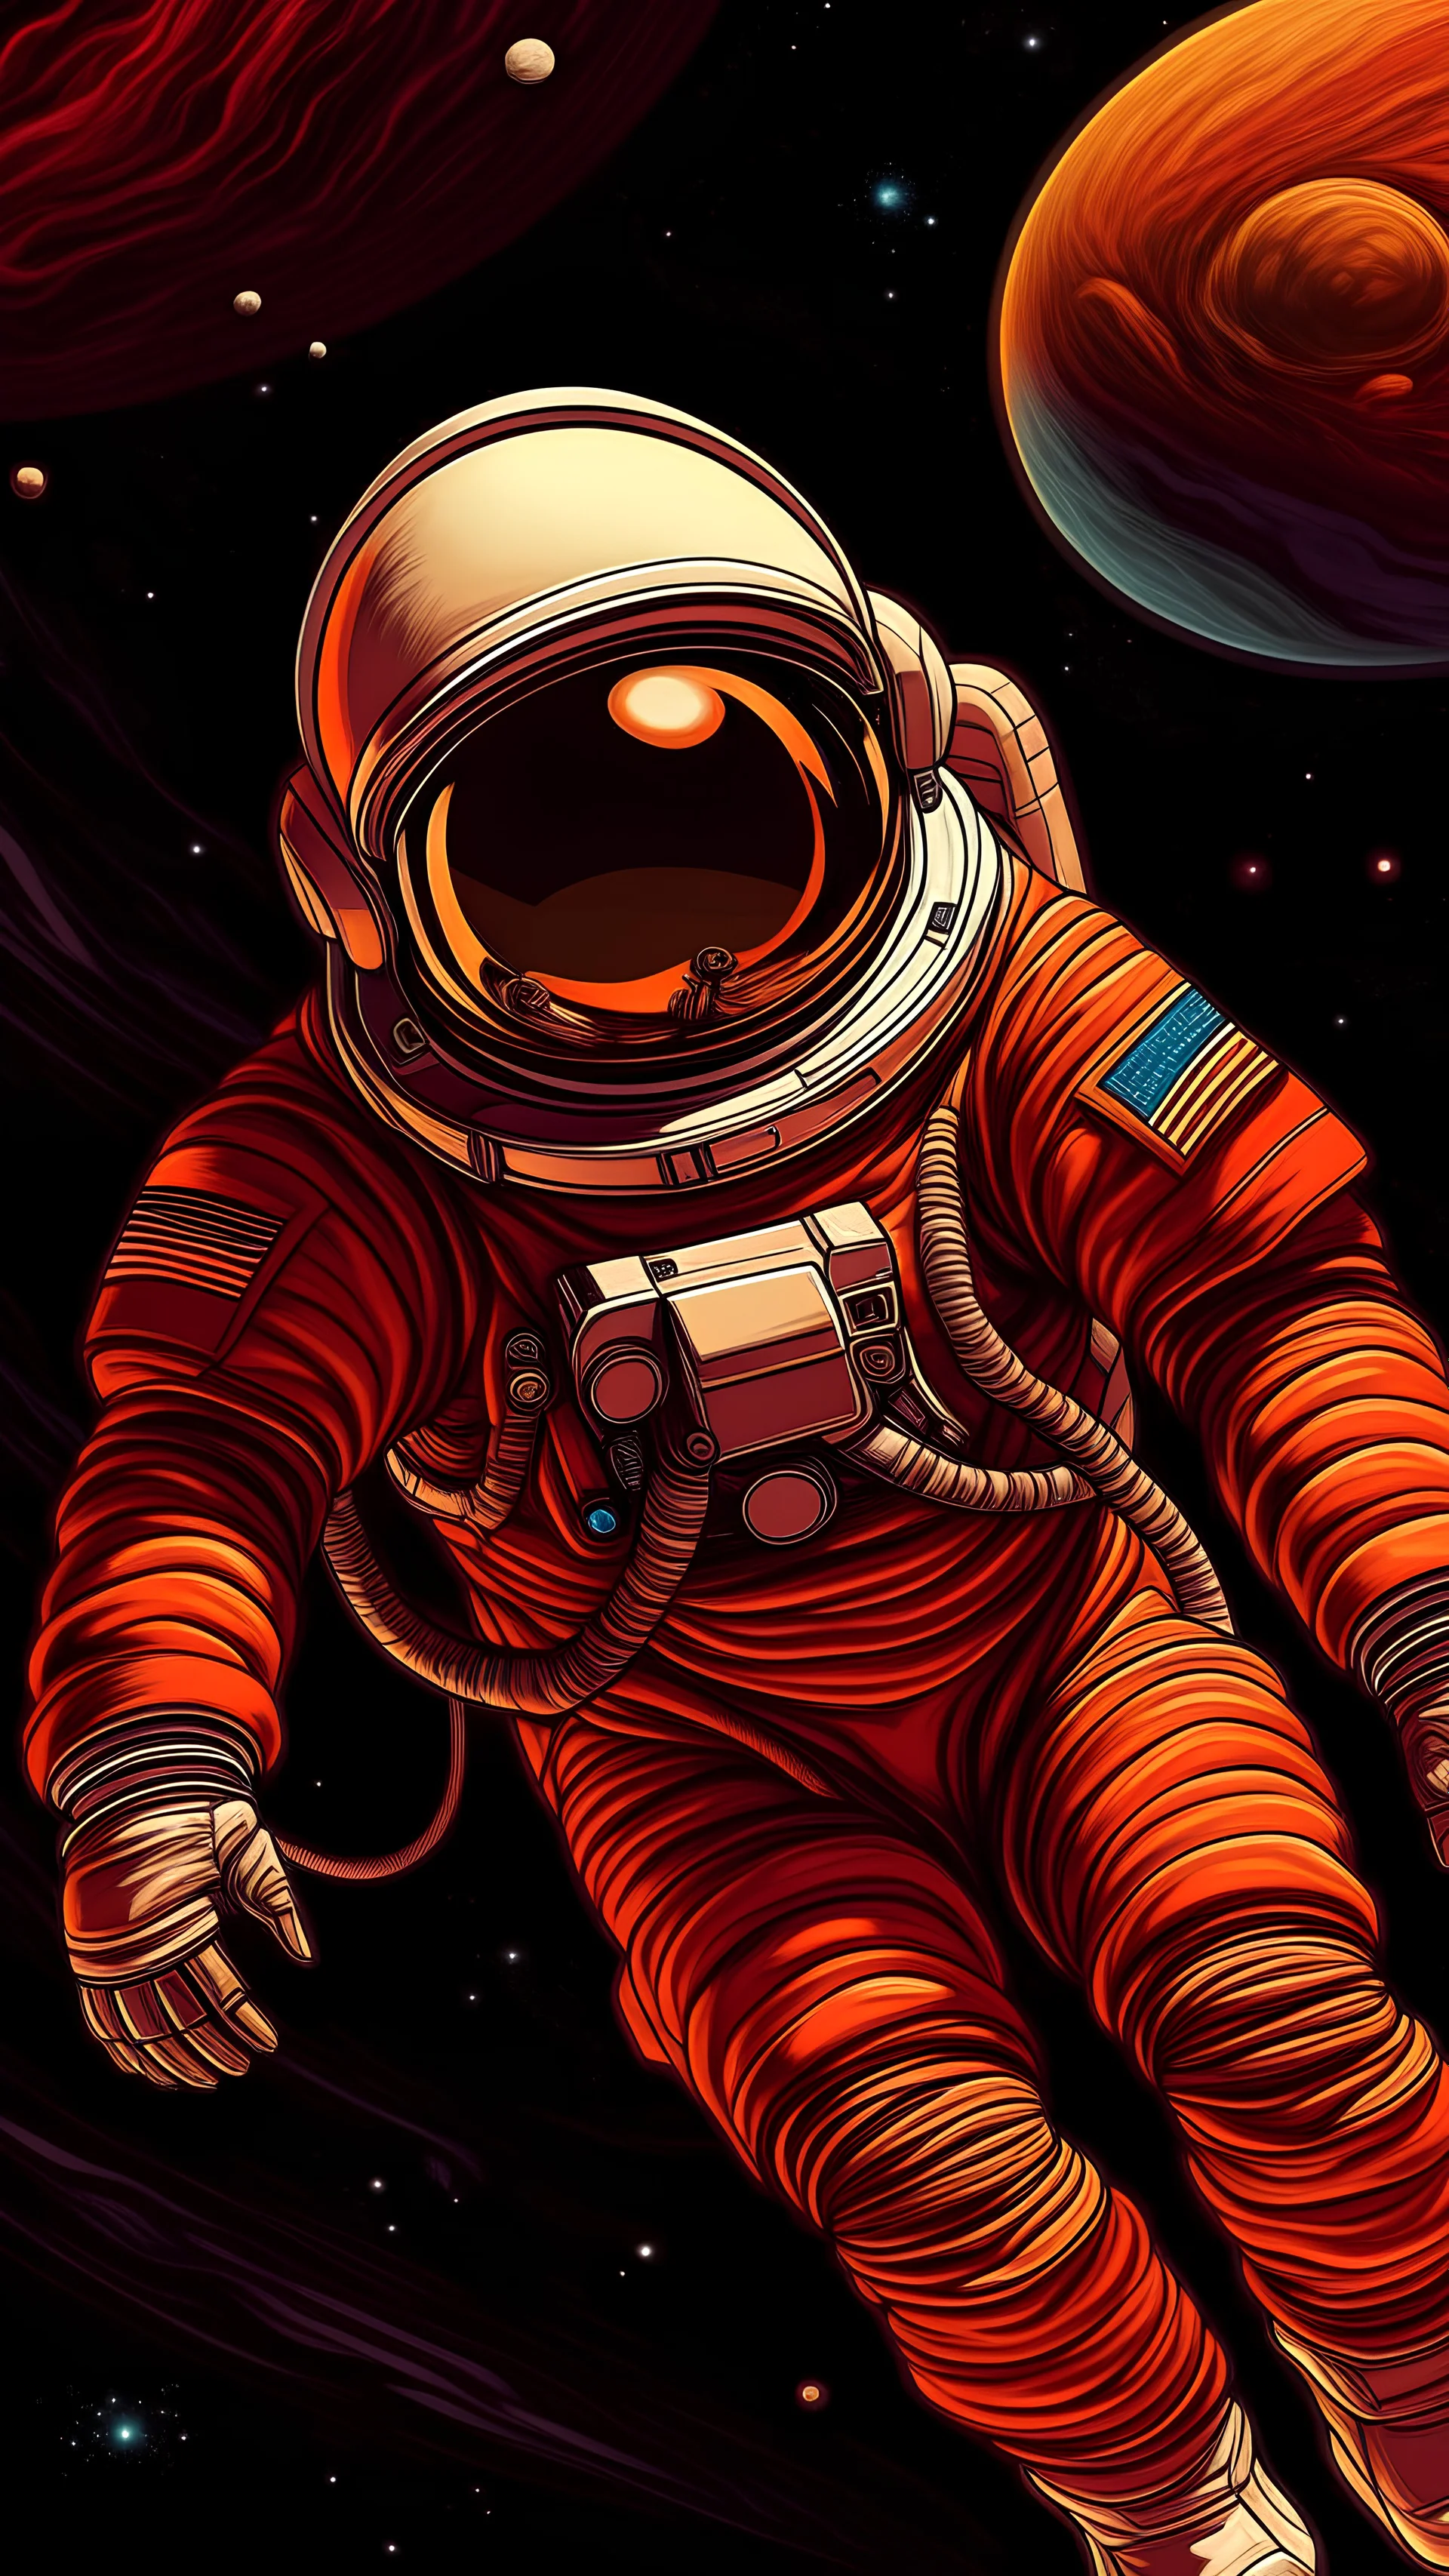 Un astronauta vestido de colores calidos, flotando en el espacio cerca del planeta jupiter